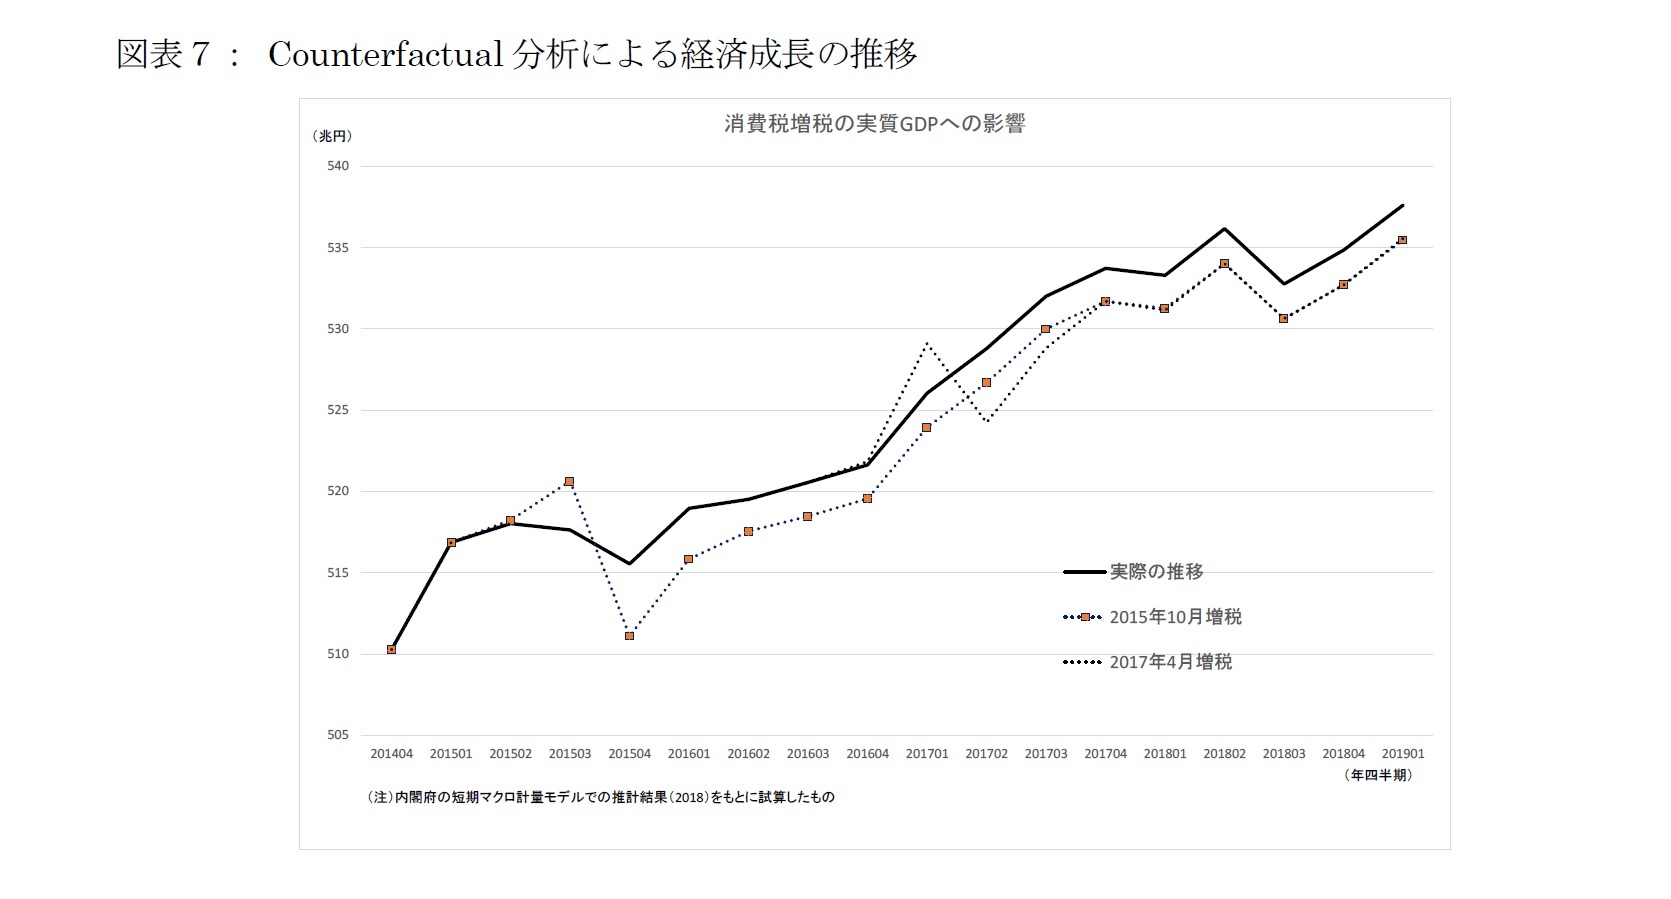 図表７： Counterfactual分析による経済成長の推移